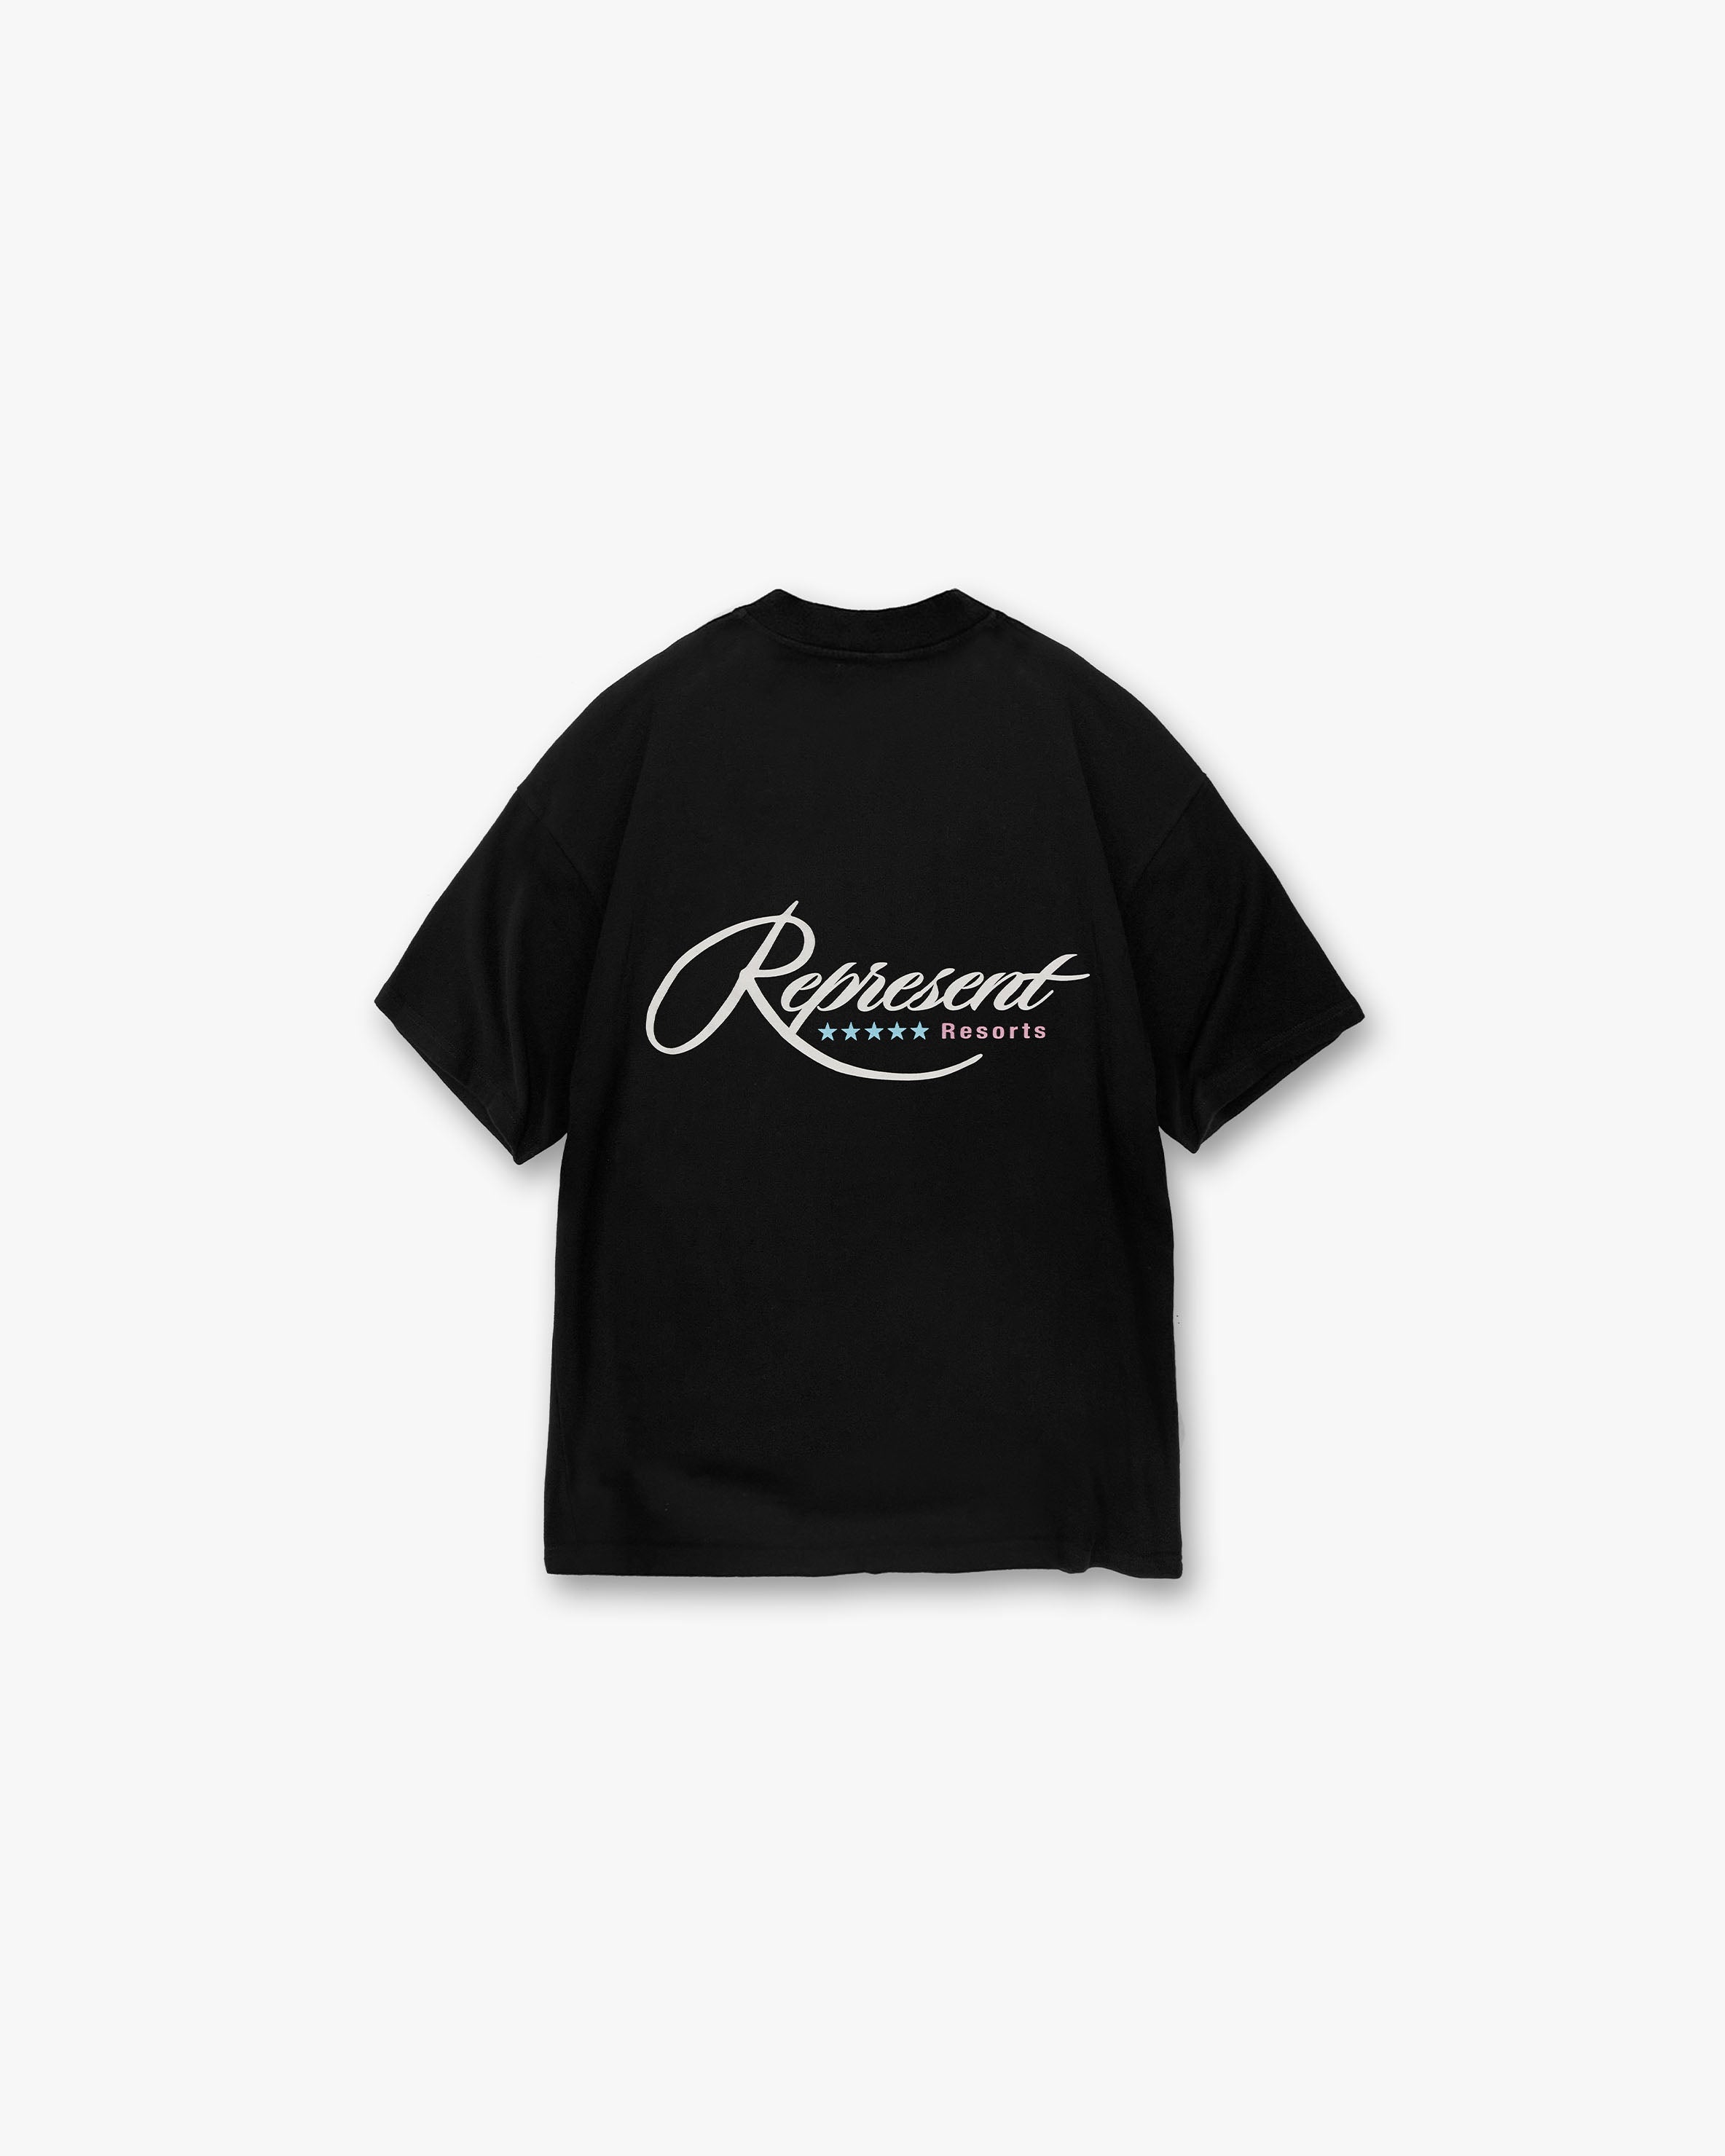 Resort T-Shirt | Black T-Shirts SC23 | Represent Clo